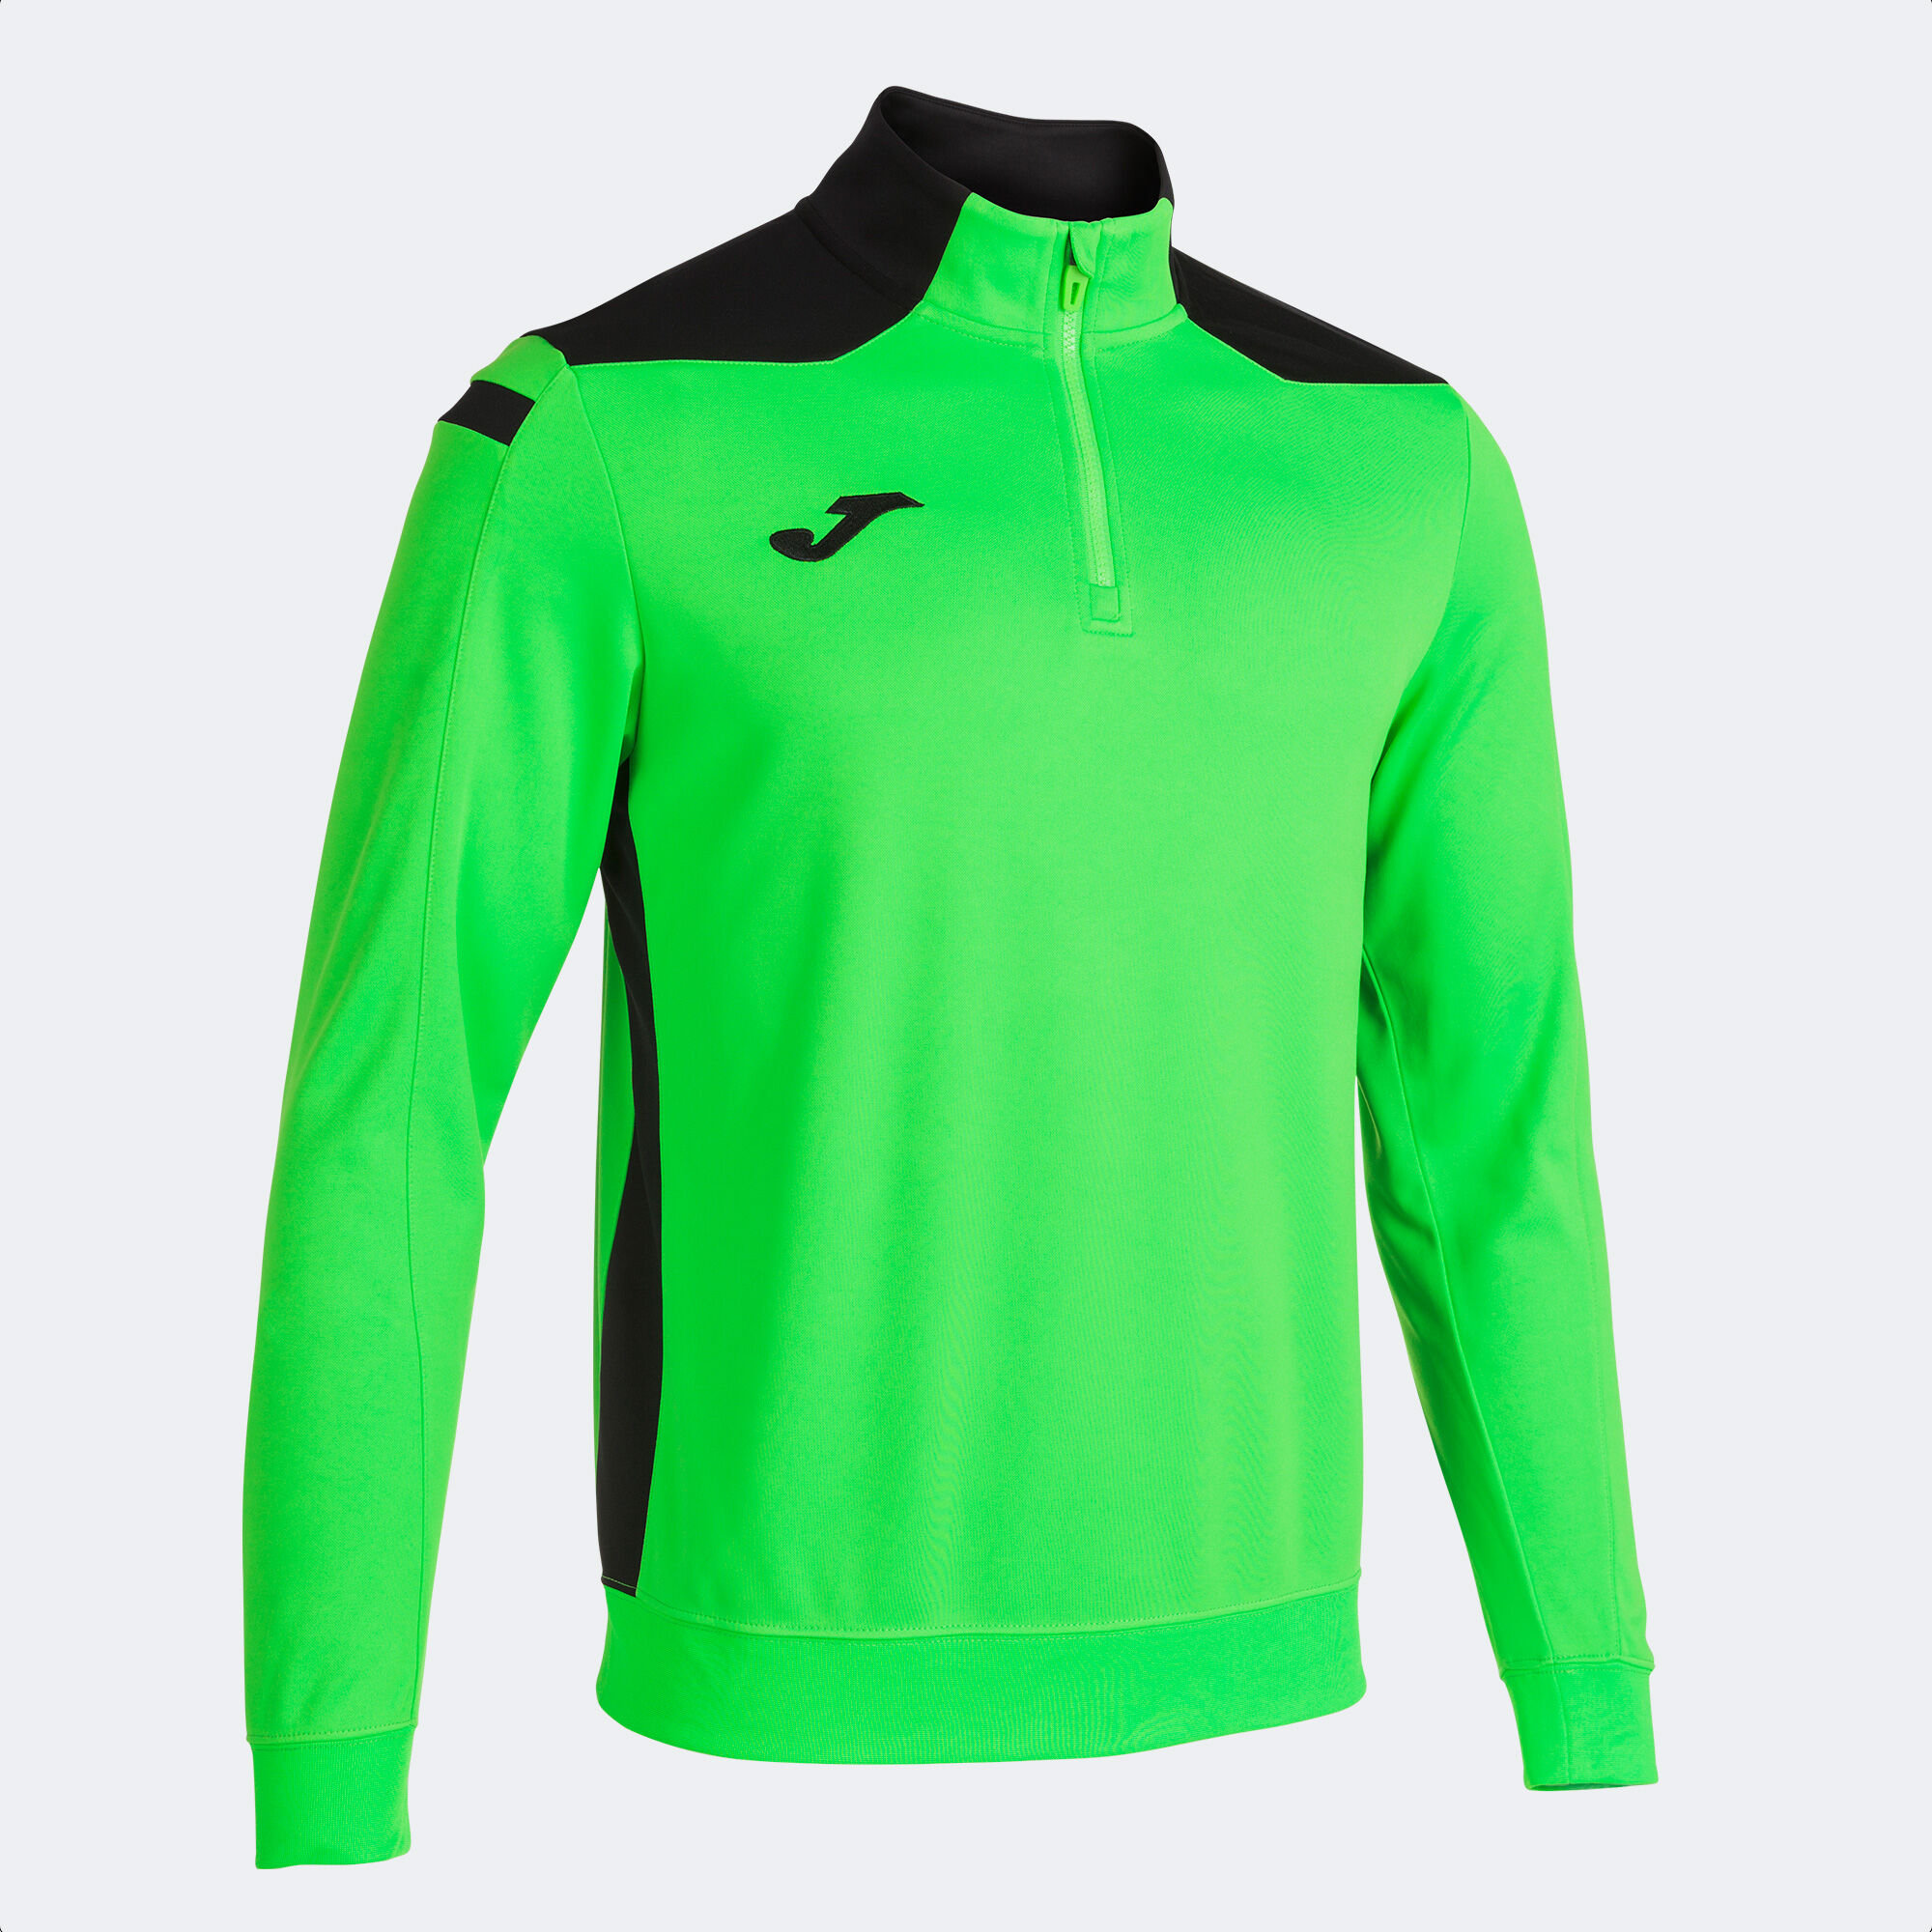 Bluza mężczyźni Championship VI fluorescencyjny zielony czarny